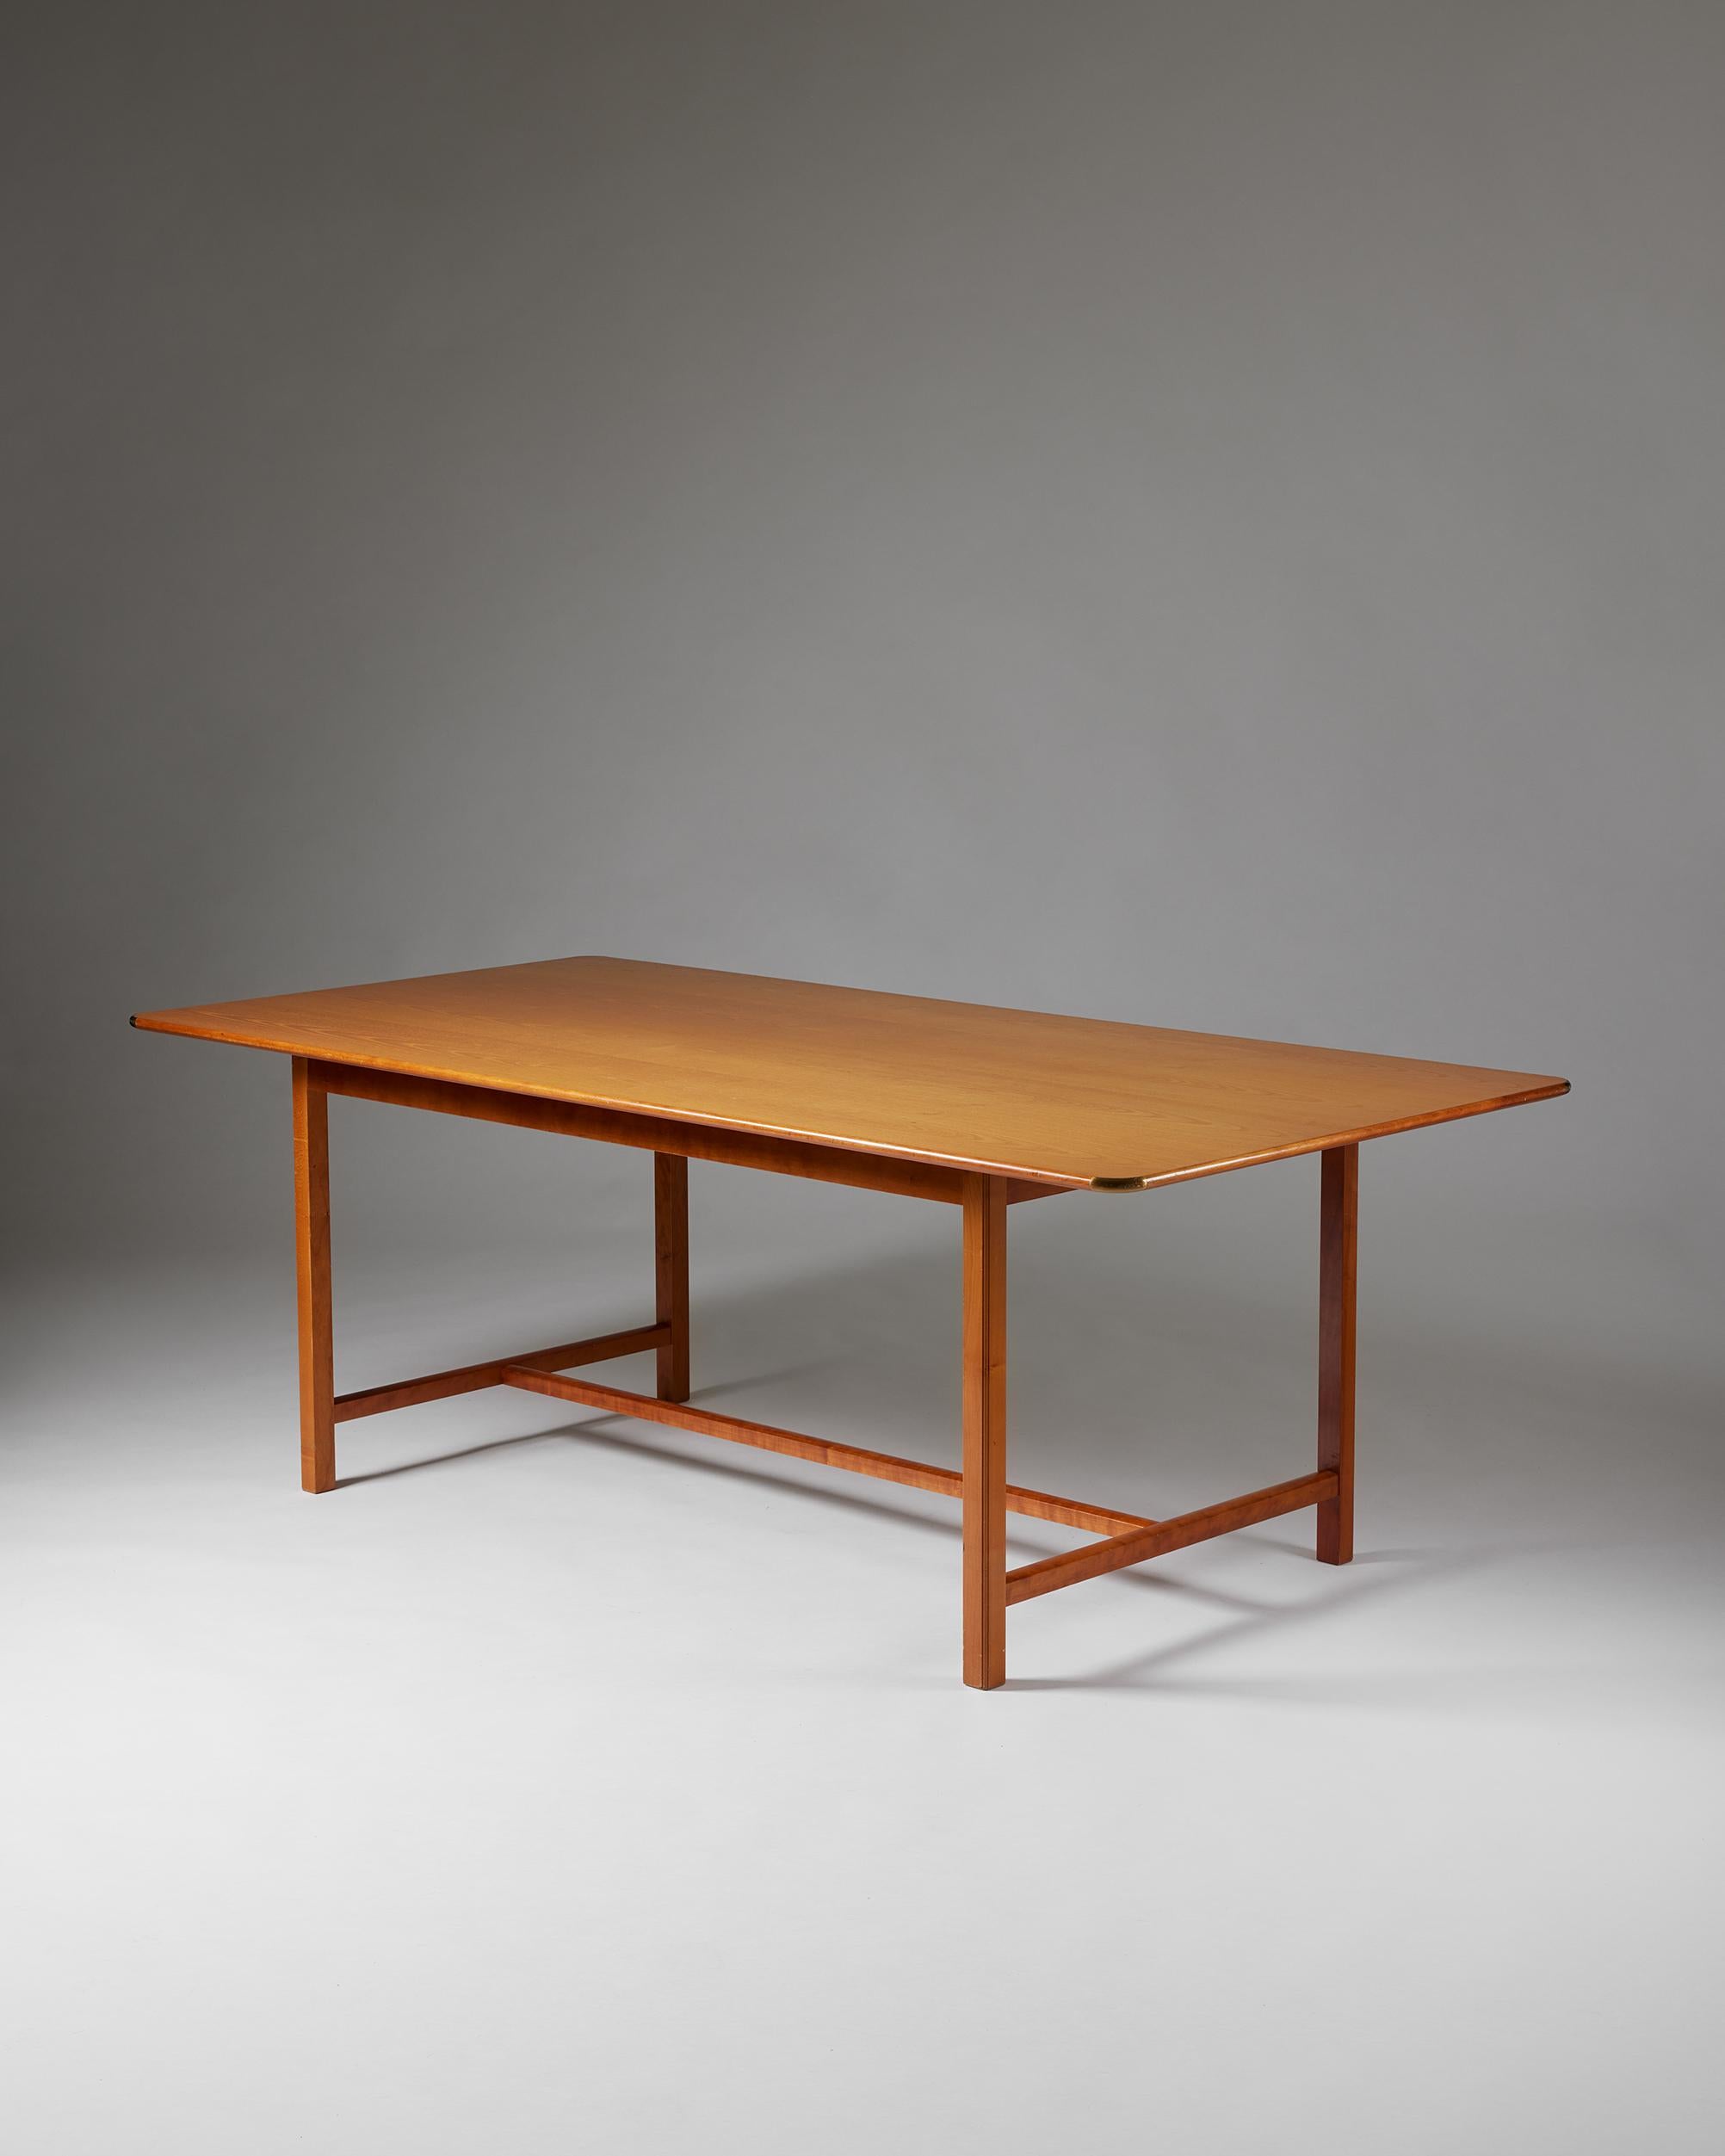 Table modèle 590 conçue par Josef Franks pour Svenskt Tenn,
Suède, années 1950.

Plateau en orme, base en cerisier et laiton.

Estampillé.

Josef Frank était un véritable Européen, mais aussi un pionnier de ce qui allait devenir le design suédois